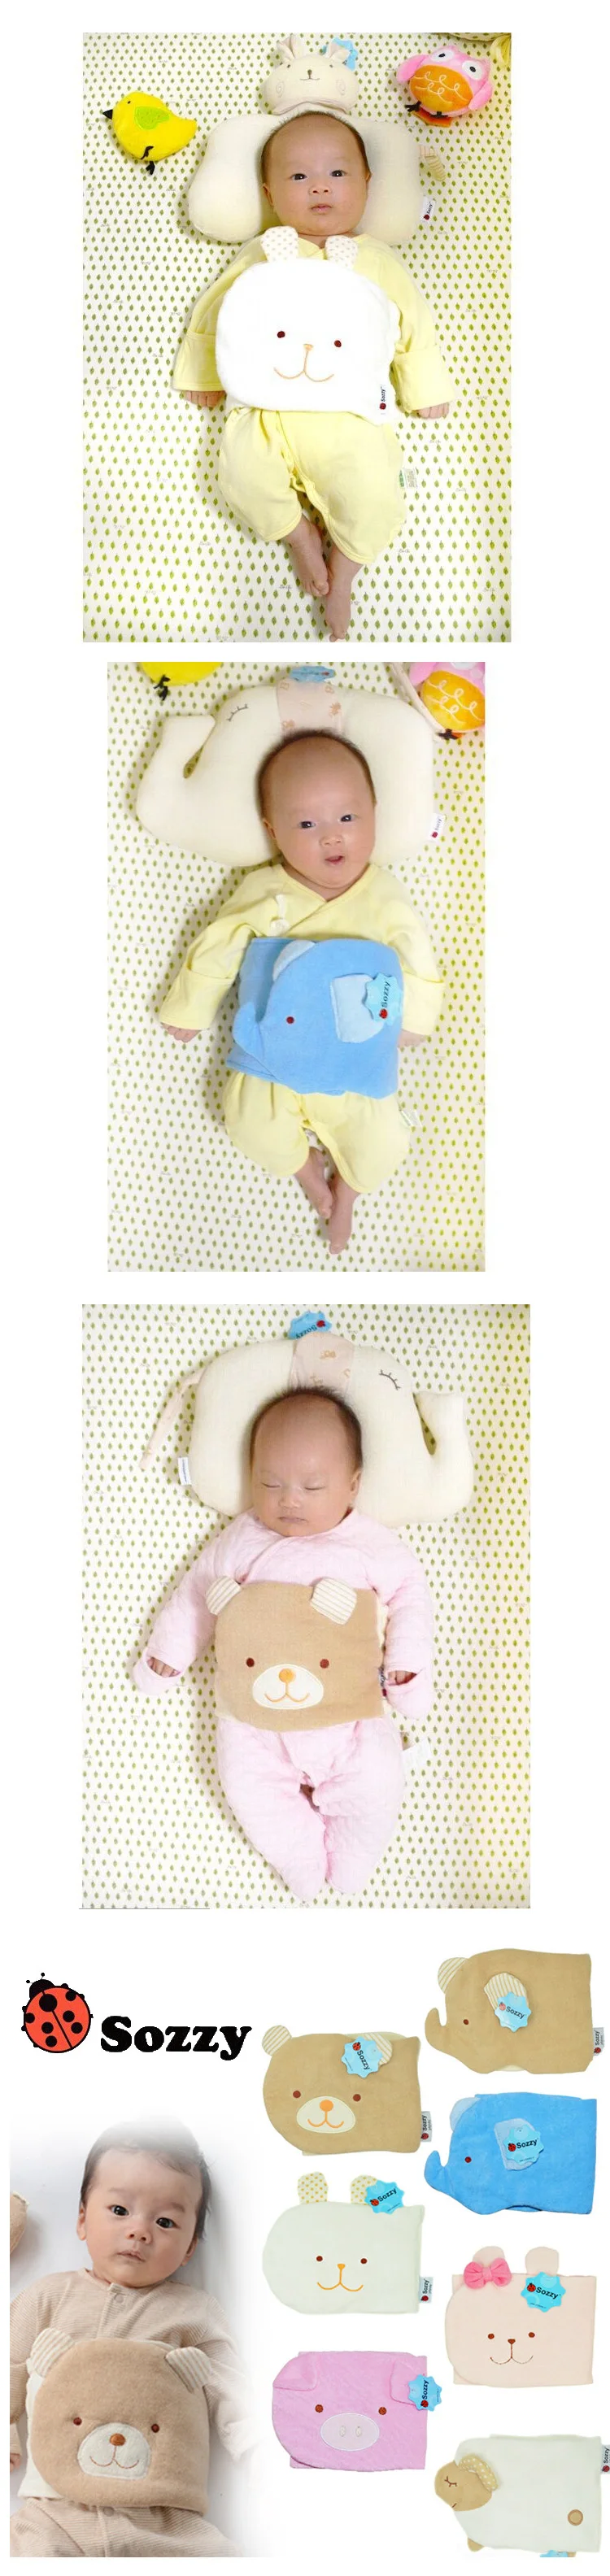 Окружность Гернии ферменная защита пупка живота Bellyband детский пупочный шнур новорожденный уход обхват младенческой живота